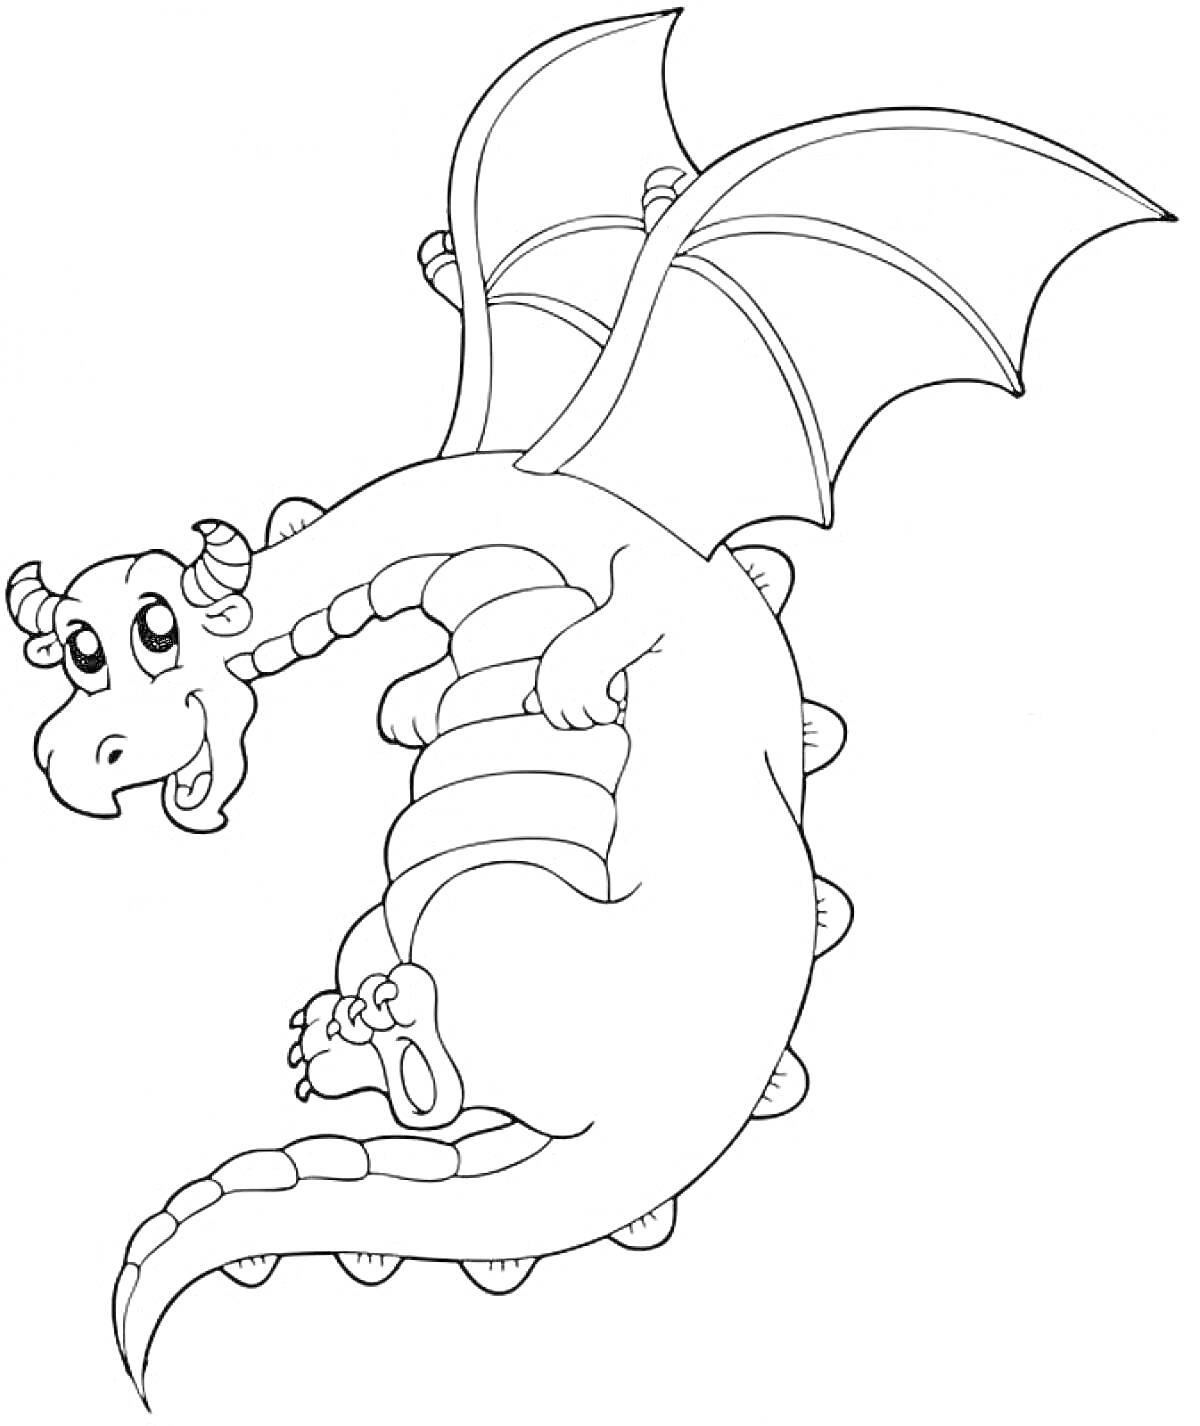 Раскраска Дракон с крыльями, улыбающийся и летящий, с крупными лапками и детализированным телом